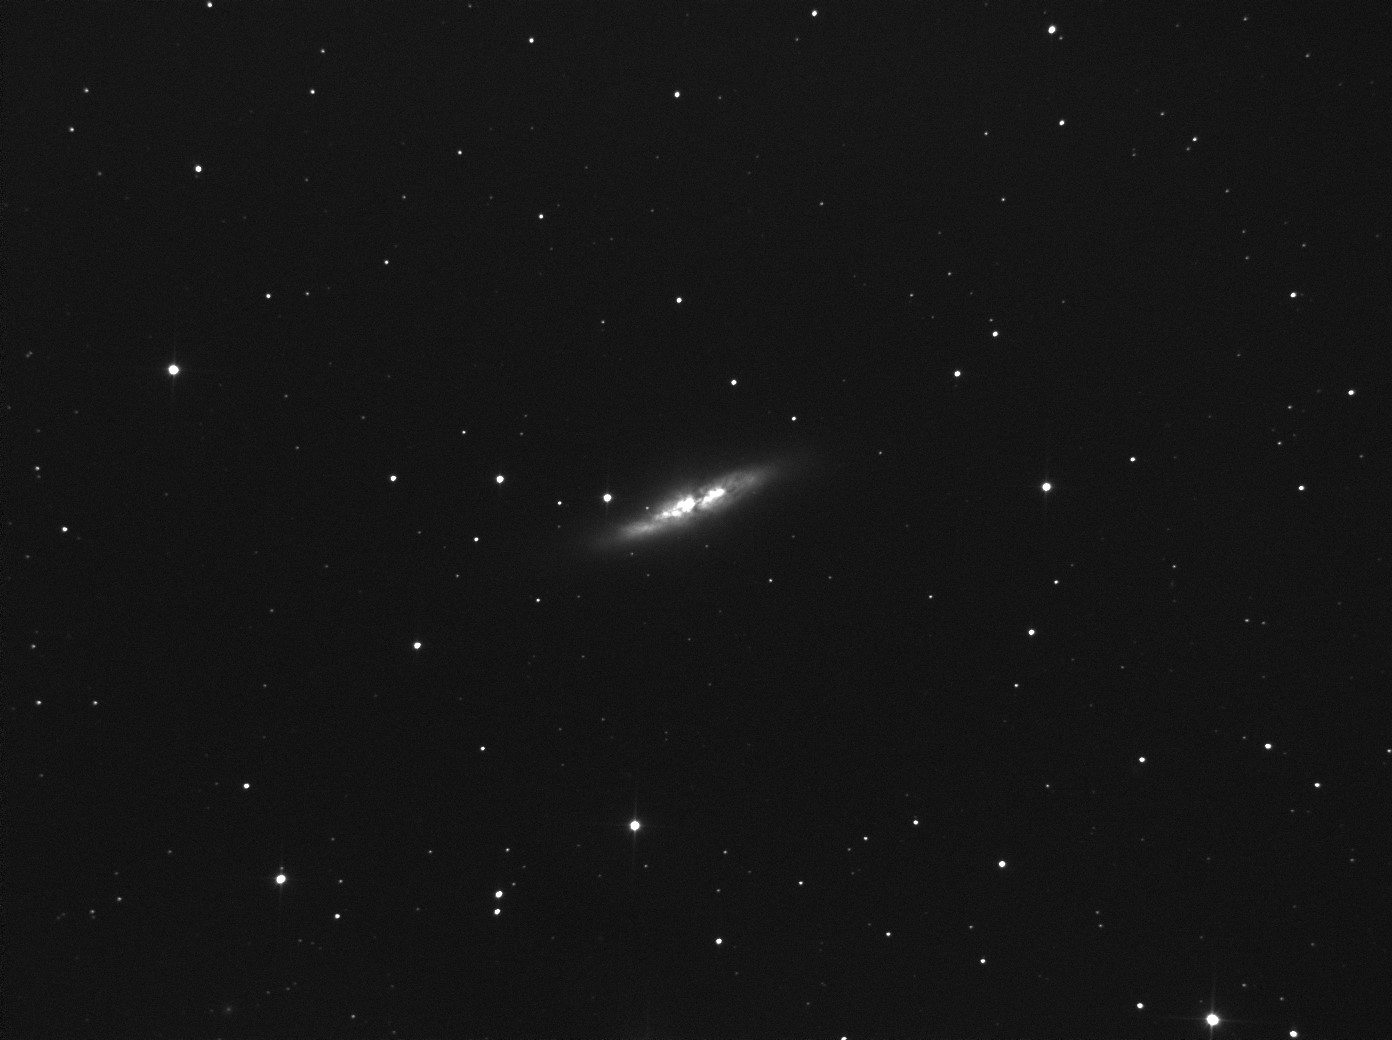 Cigar galaxy M82_6x50s.jpg